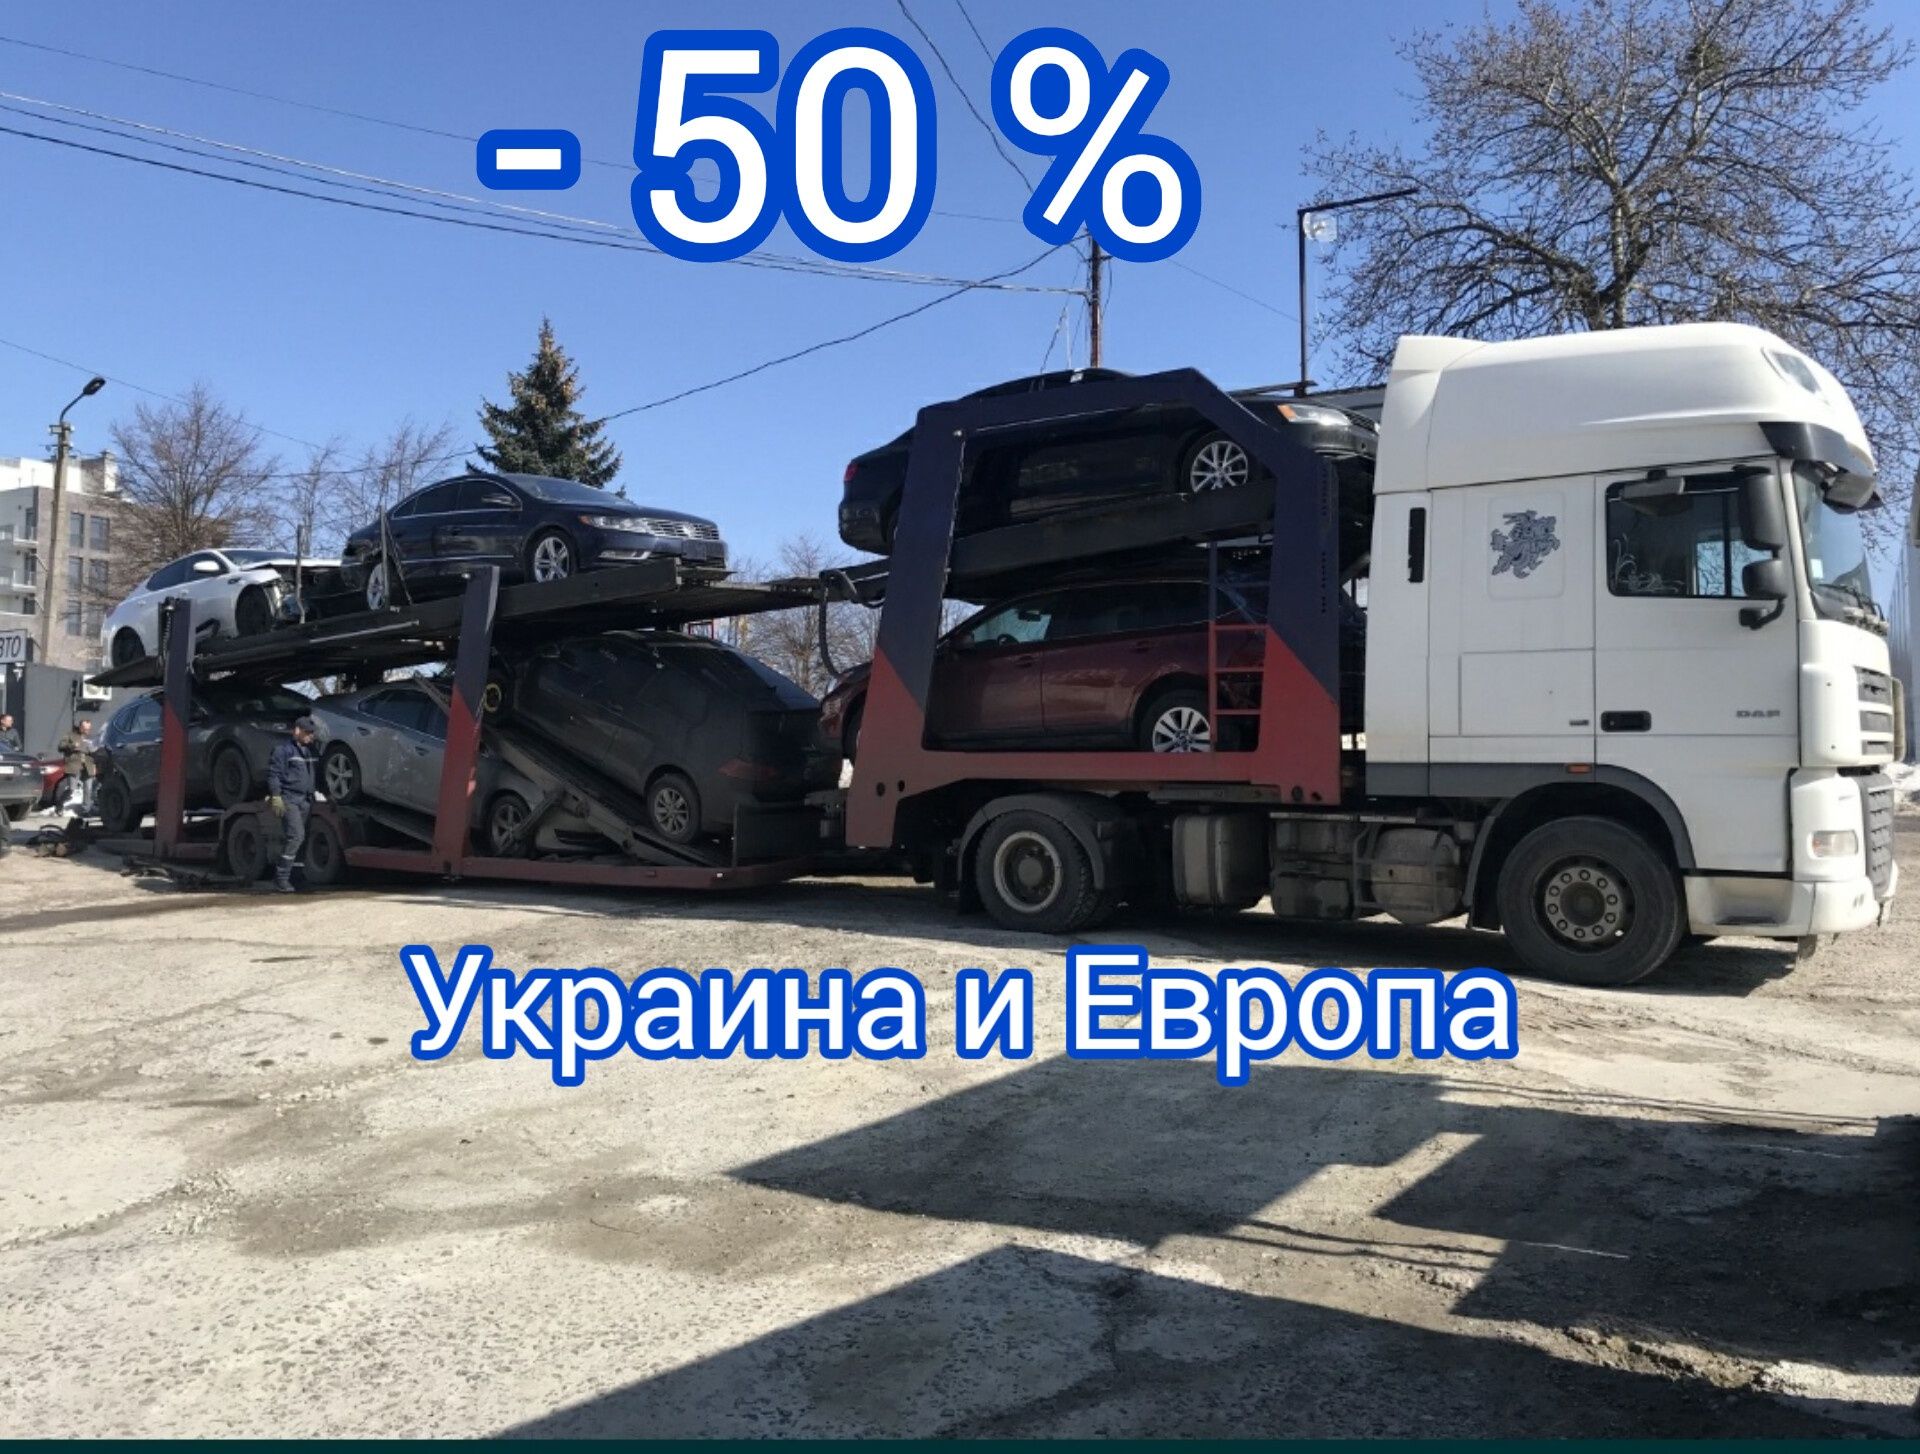 ПОПУТНЫЙ ЭВАКУАТОР АВТОВОЗ Украина в Европу с Европи попутний евакуато